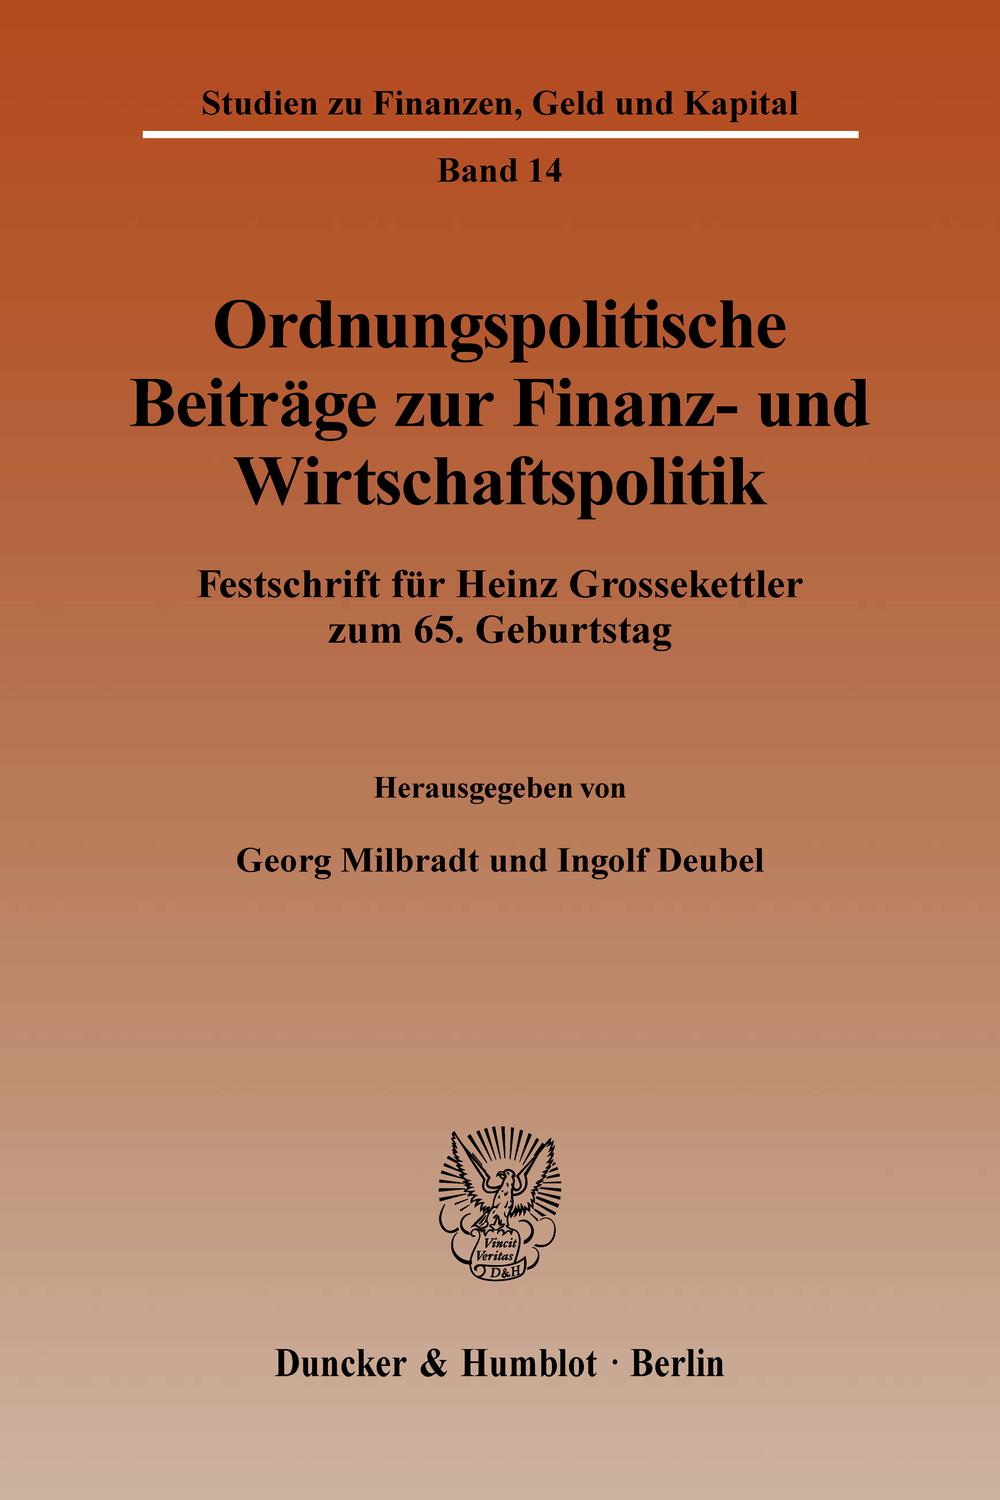 Ordnungspolitische Beiträge zur Finanz- und Wirtschaftspolitik. - Georg Milbradt, Ingolf Deubel